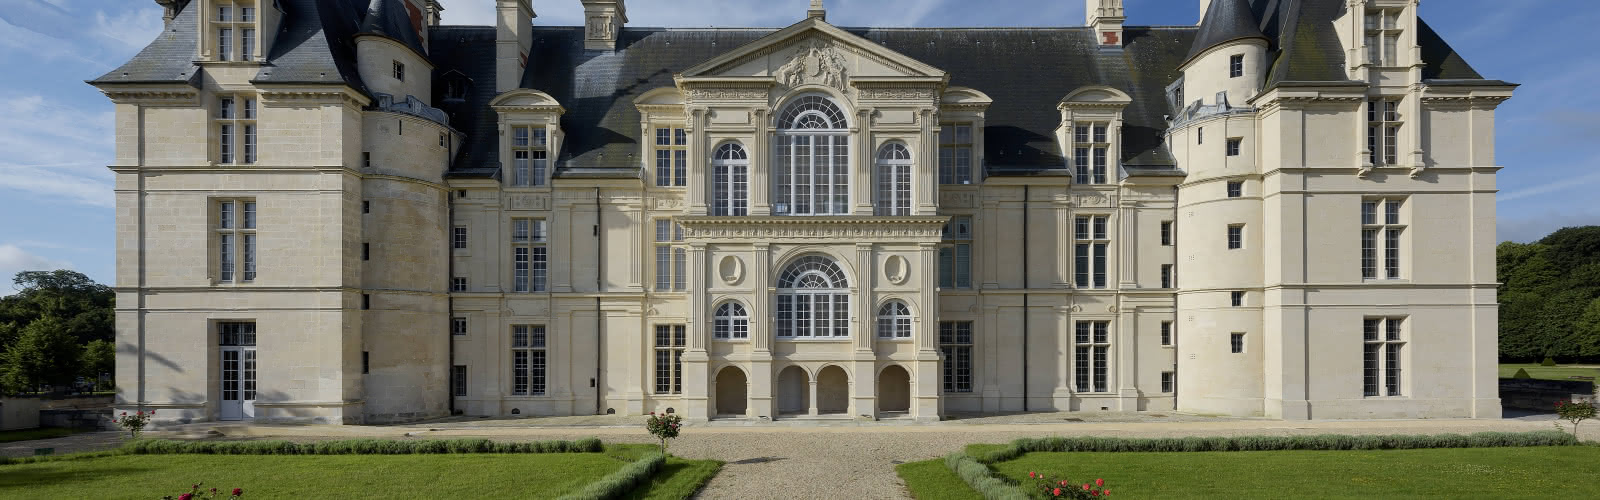 Château d'Écouen - Musée national de la Renaissance - vue aérienne